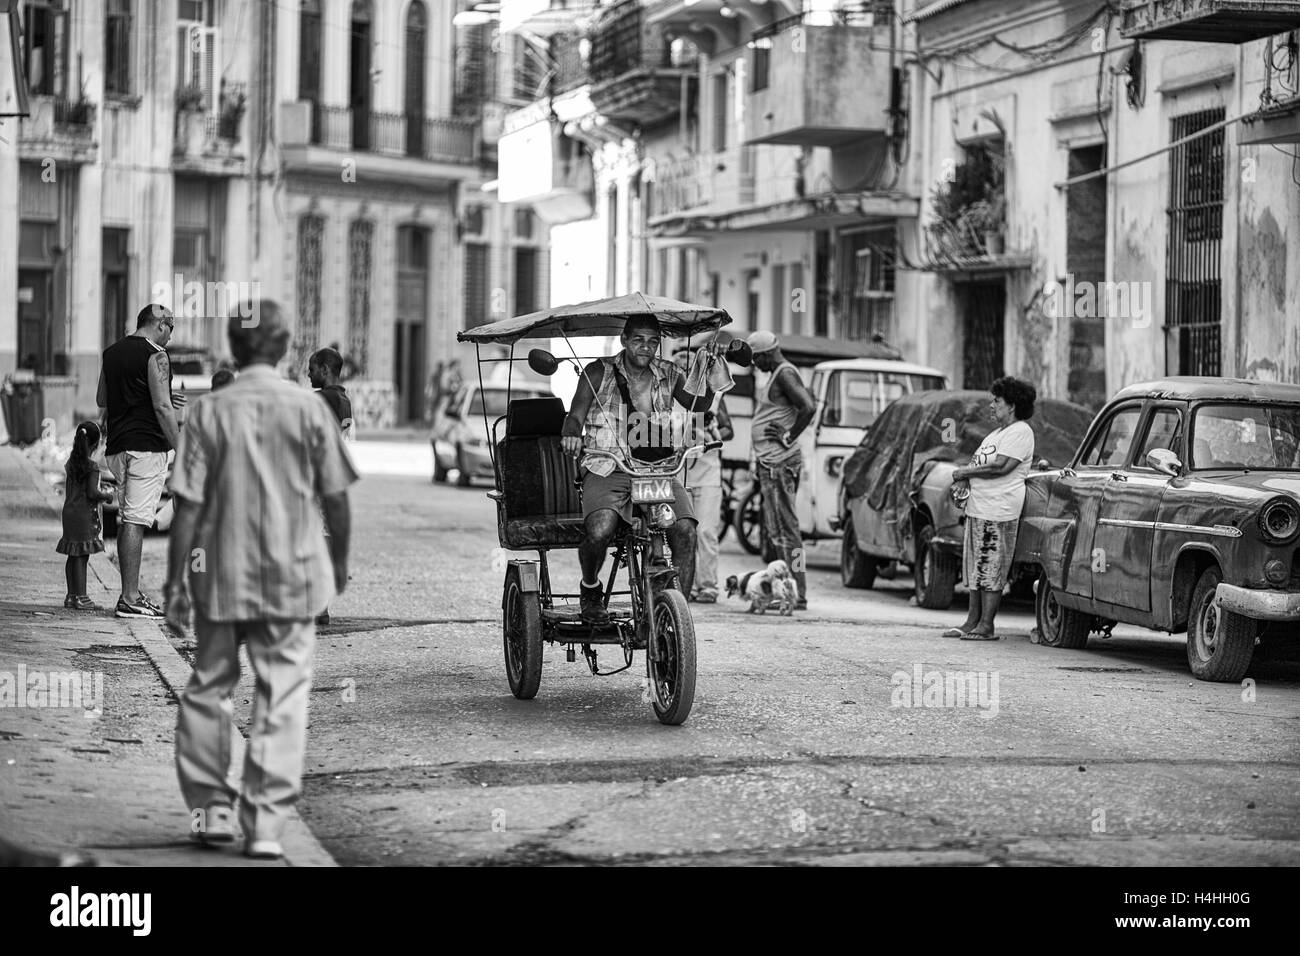 Habana Vieja (Old Havana), Cuba Stock Photo